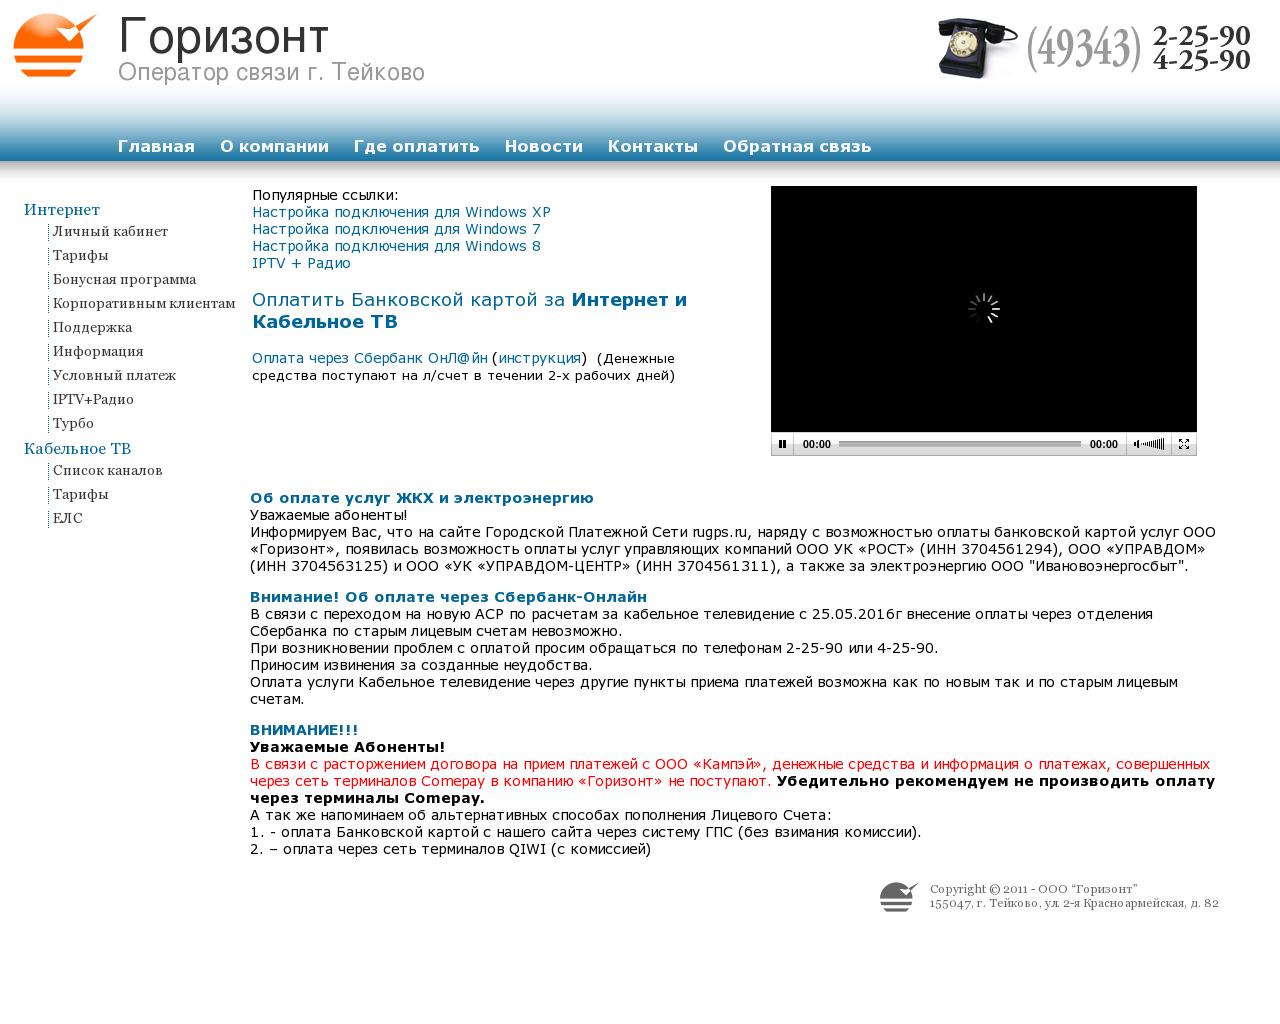 Изображение сайта skatv.ru в разрешении 1280x1024